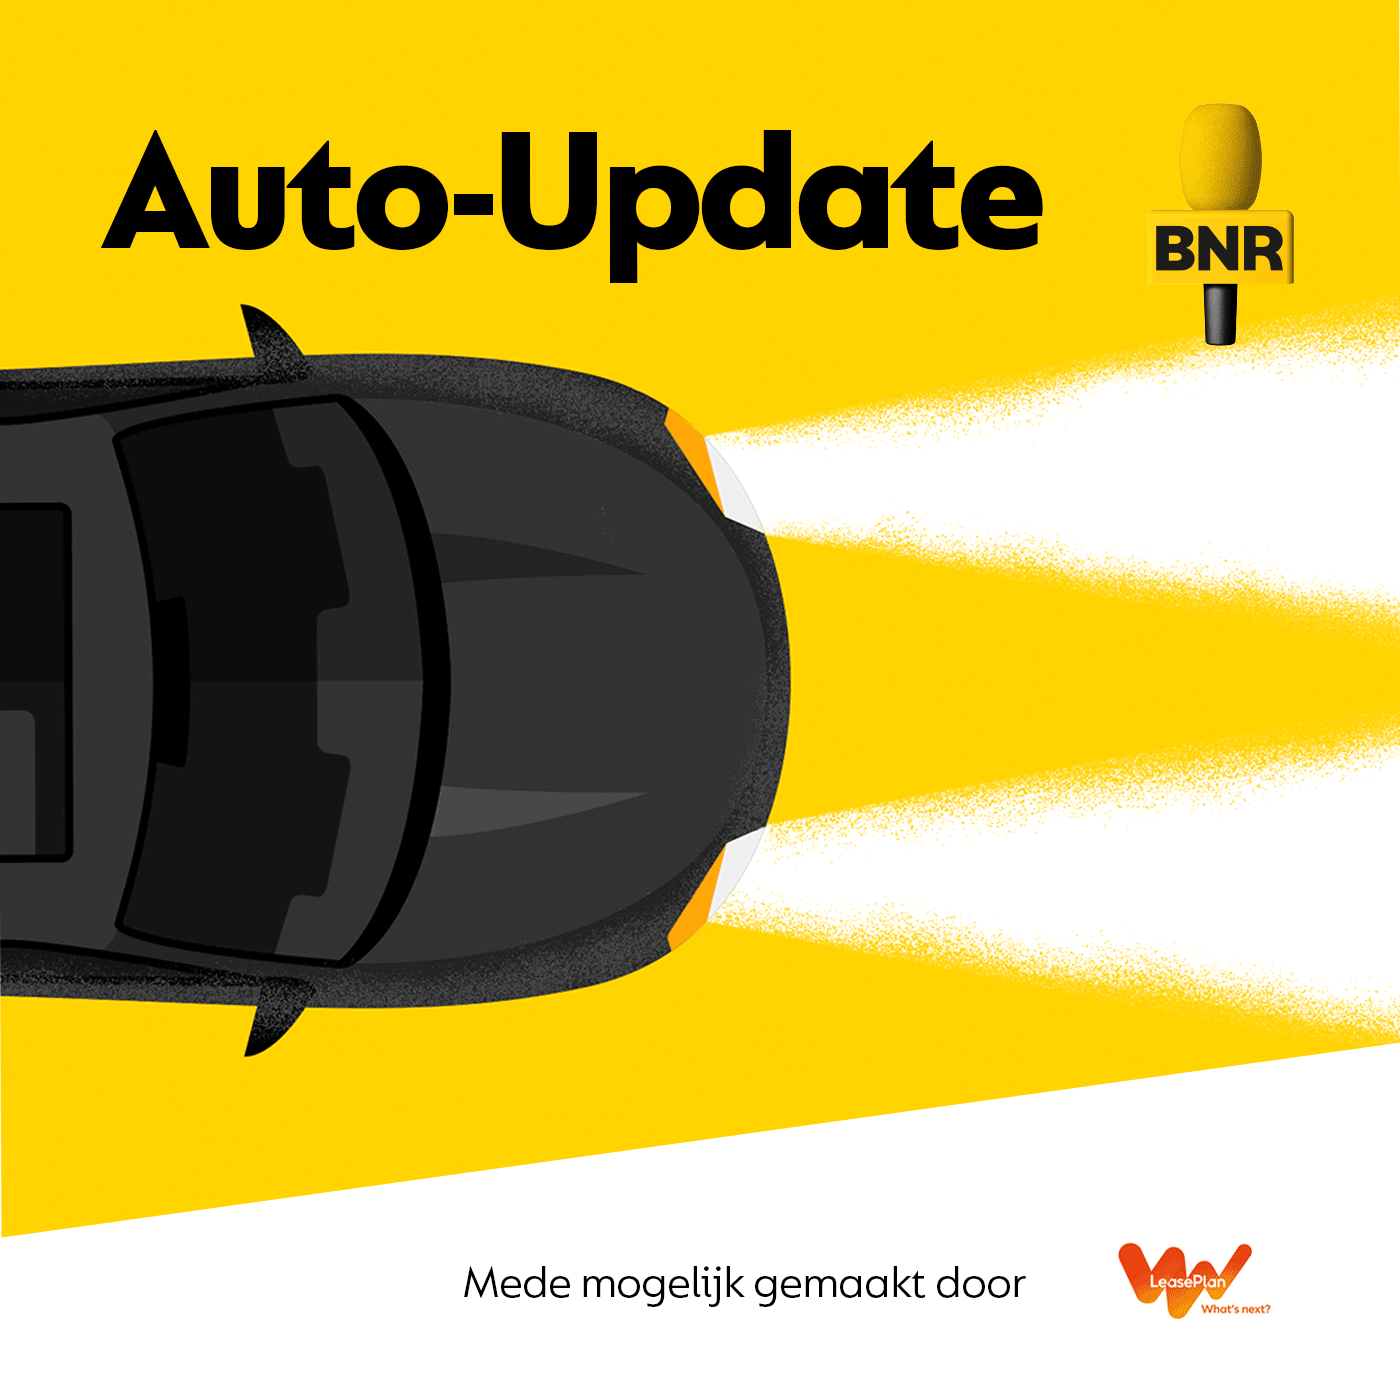 BNR Auto-Update